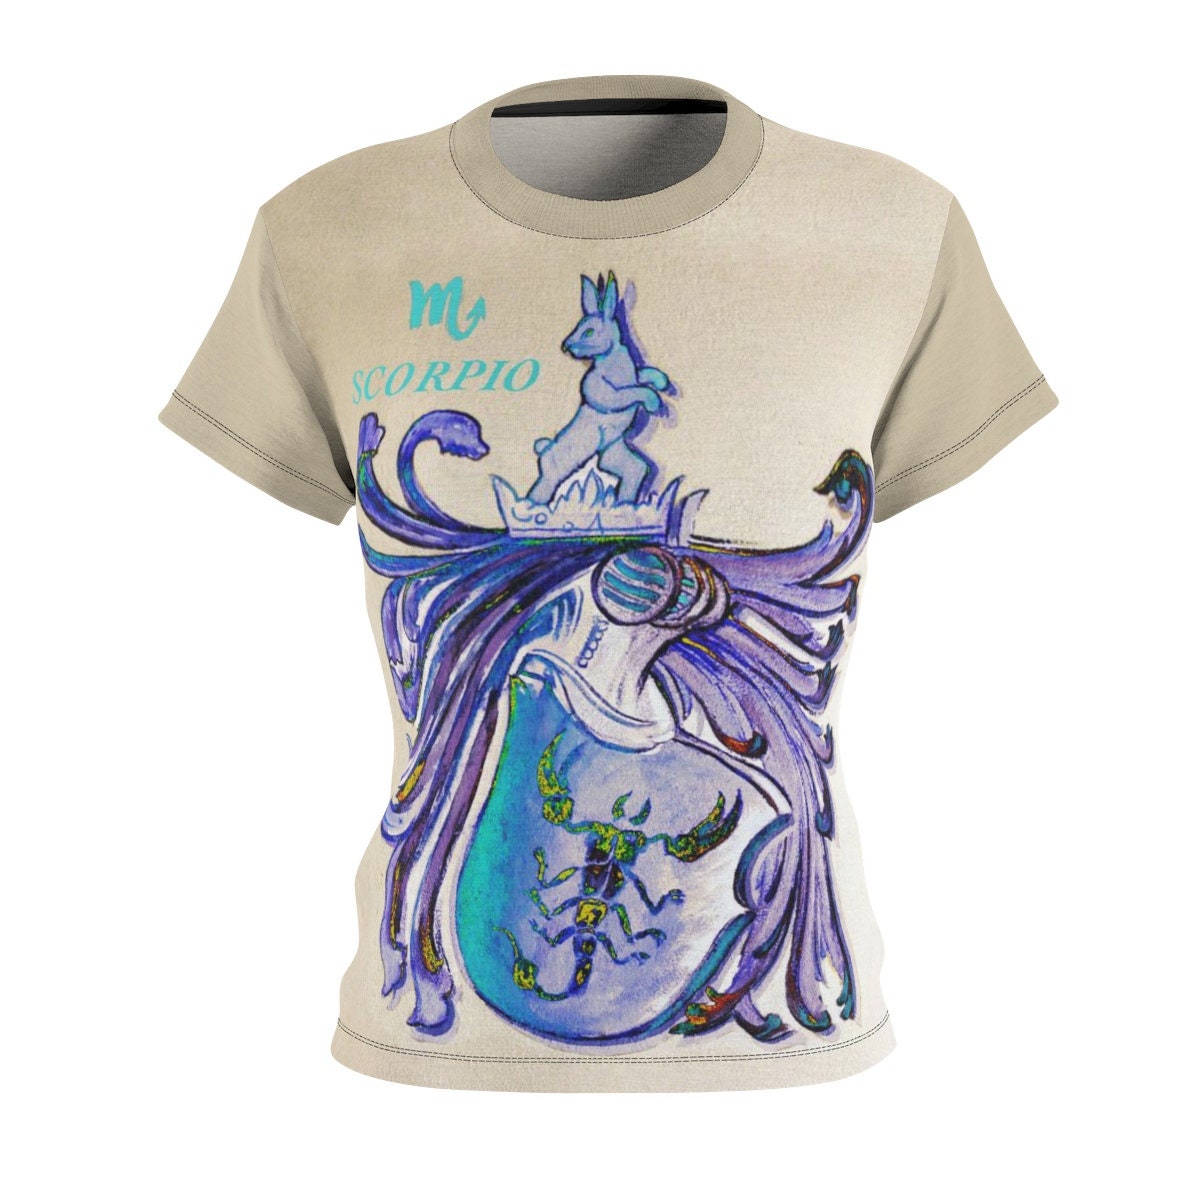 Scorpio / Astrology / Women / Zodiac / T-shirt / Tee / Shirt / Vintage / Art / Valentine / Birthday / Clothing / Gift for Her - Chloe Lambertin